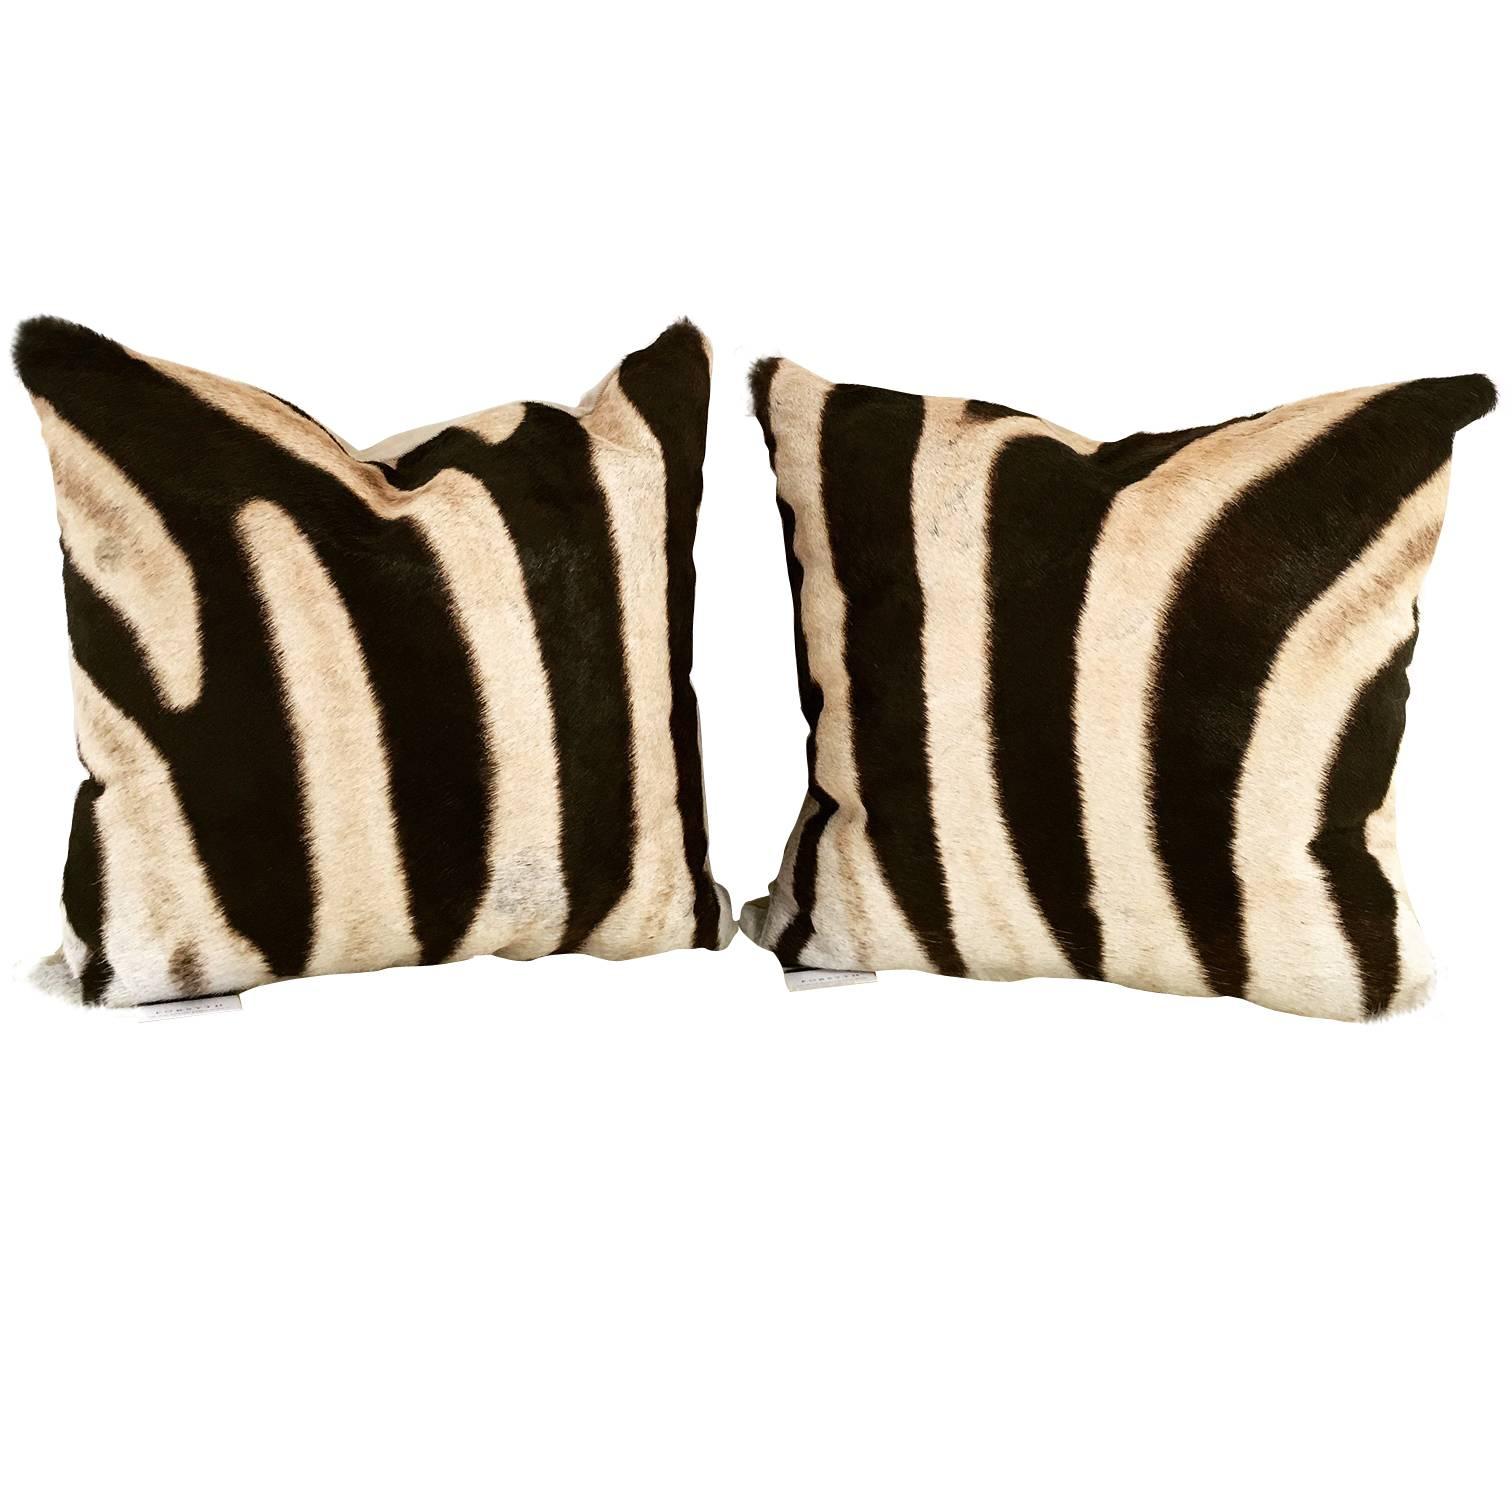 Zebra Hide Pillows, No. 259 and 260